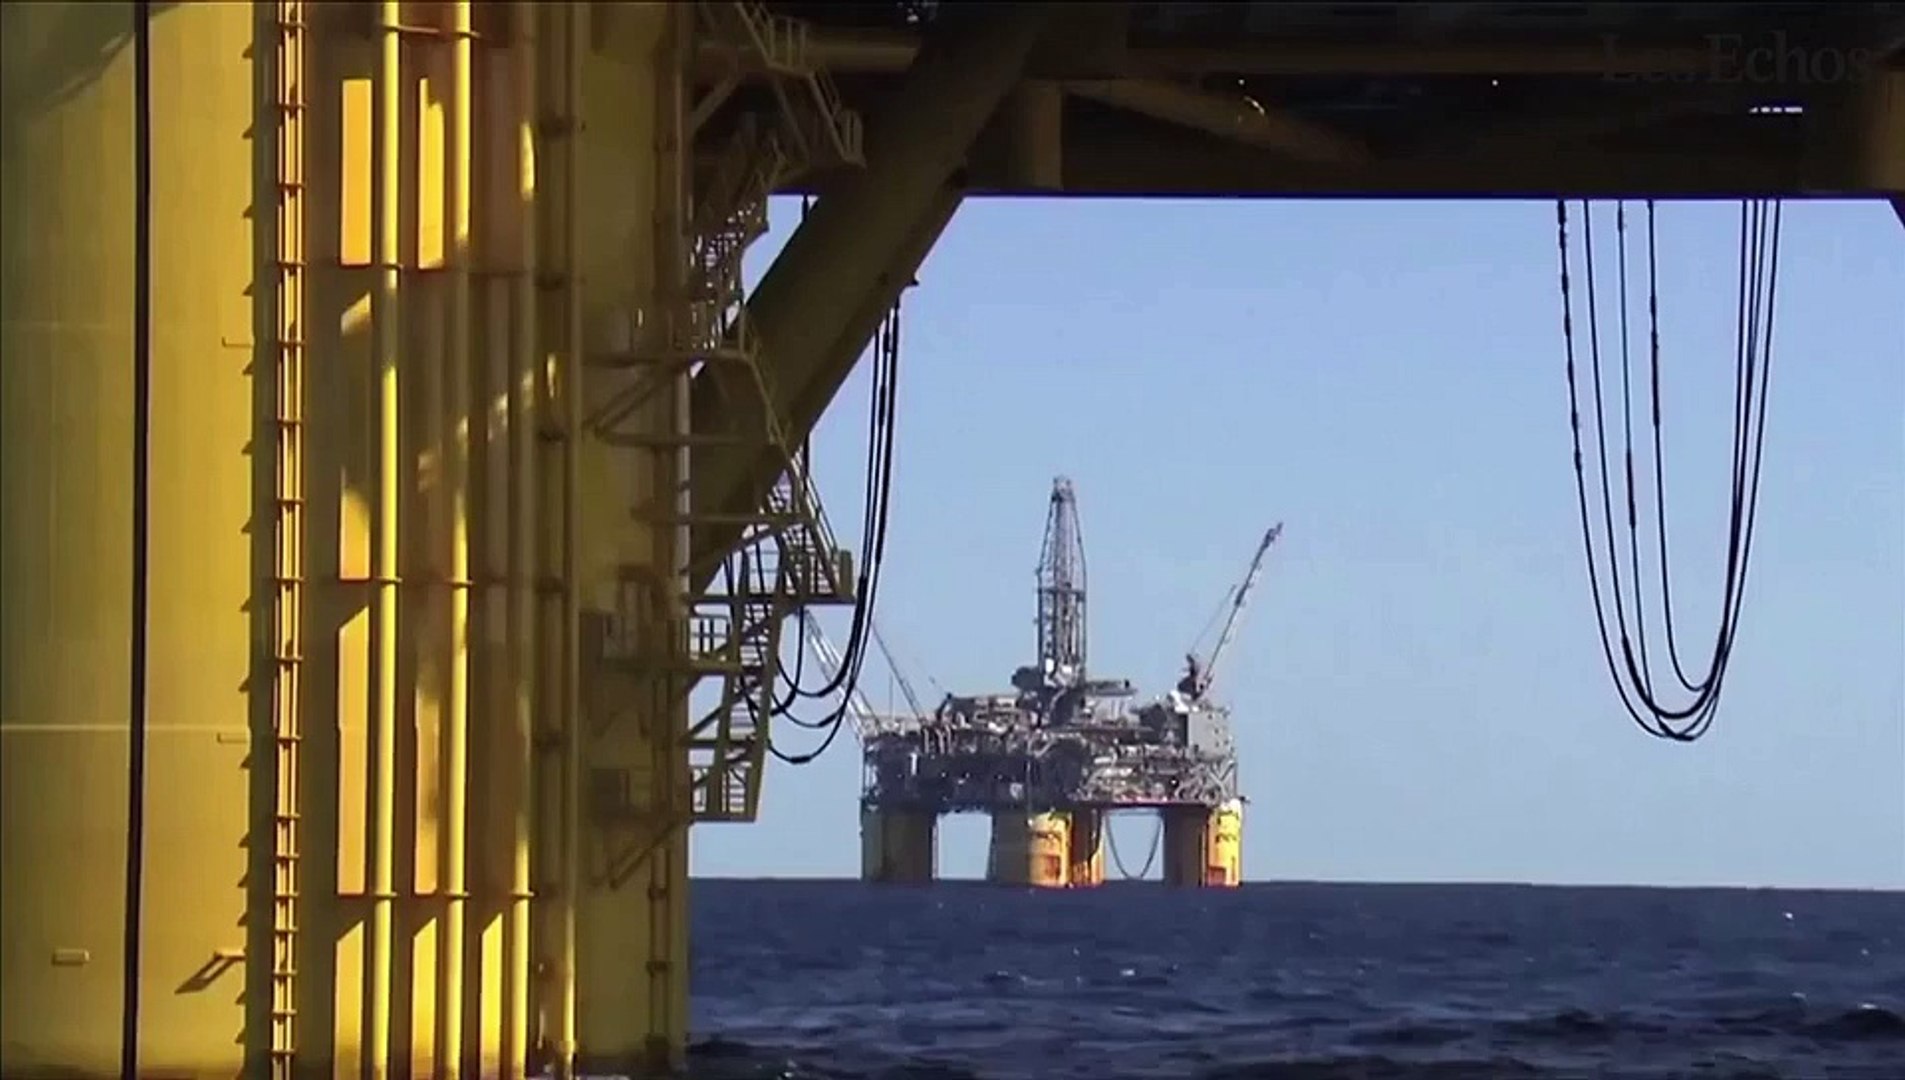 Le baril de Brent au plus bas depuis 11 ans : comment expliquer la chute  des cours du pétrole ? - Vidéo Dailymotion